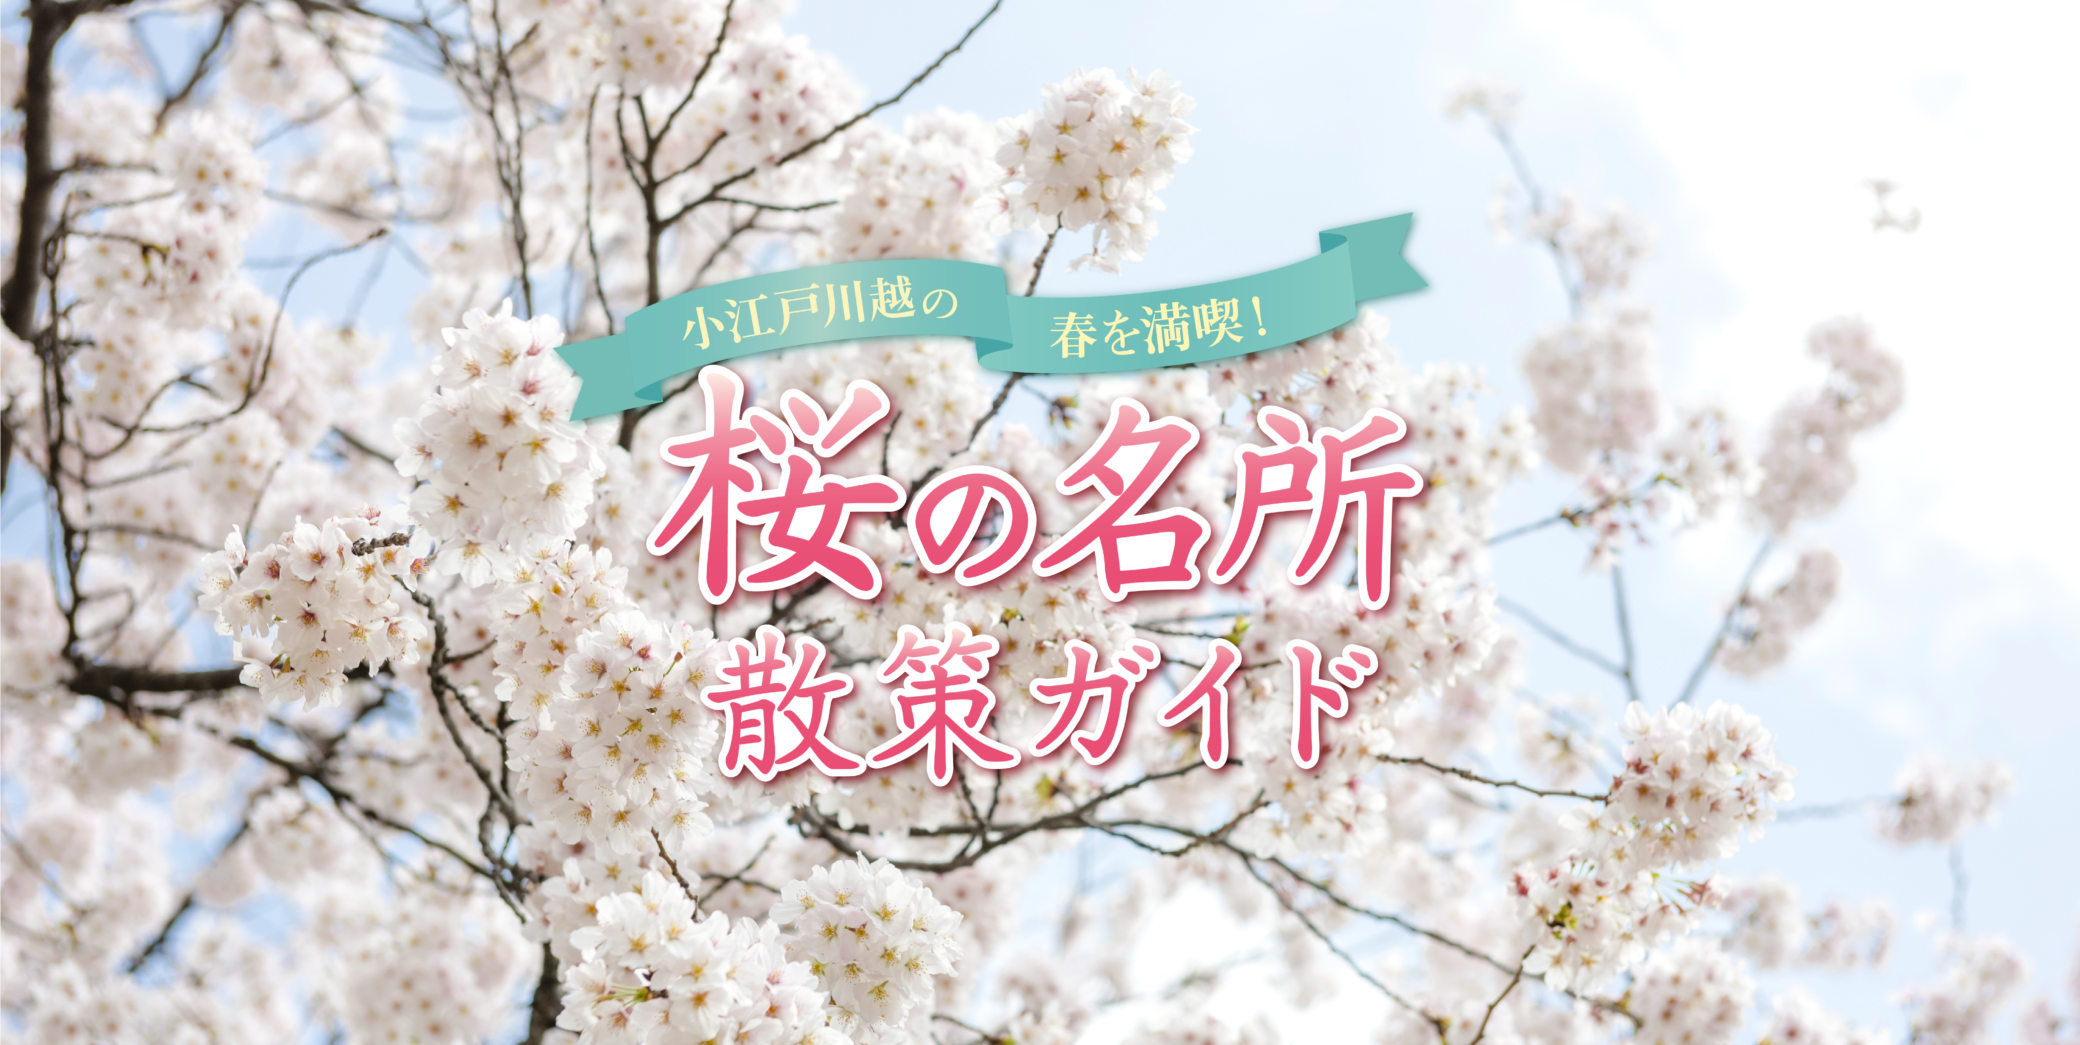 Aproveite a primavera em Koedo Kawagoe!Guia de visualização da flor de cerejeira